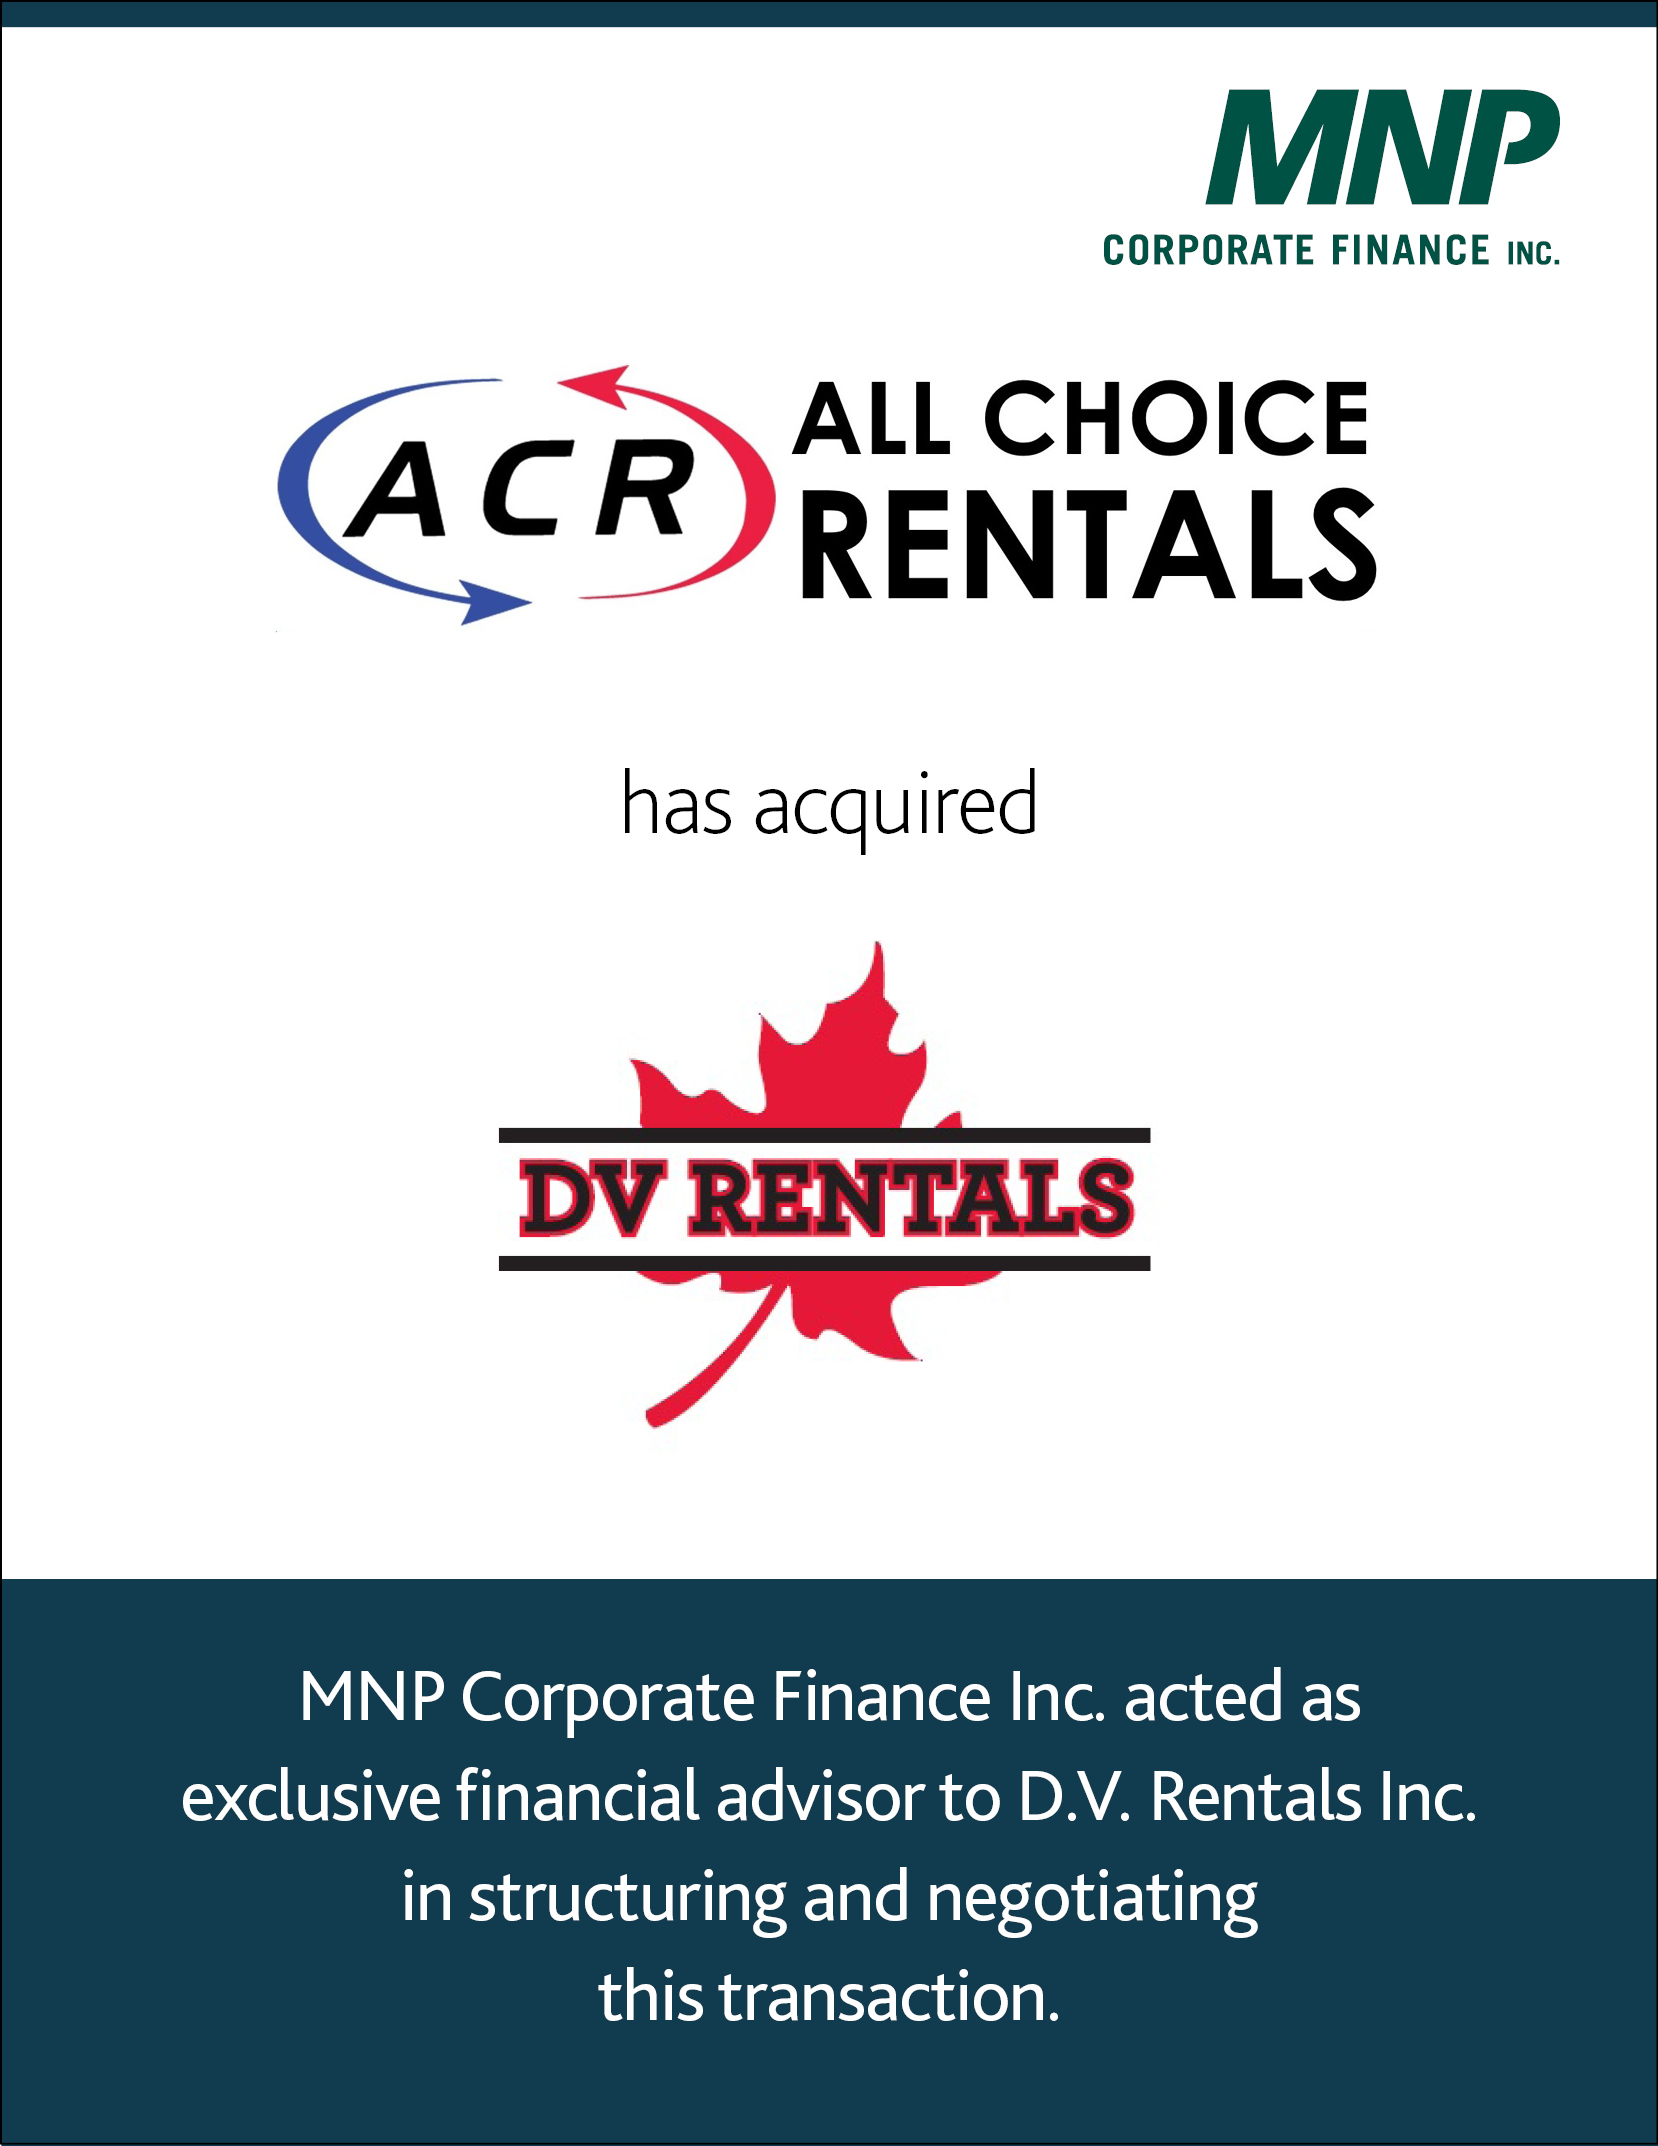 All Choice Rentals Ltd. has acquired D.V. Rentals Inc.